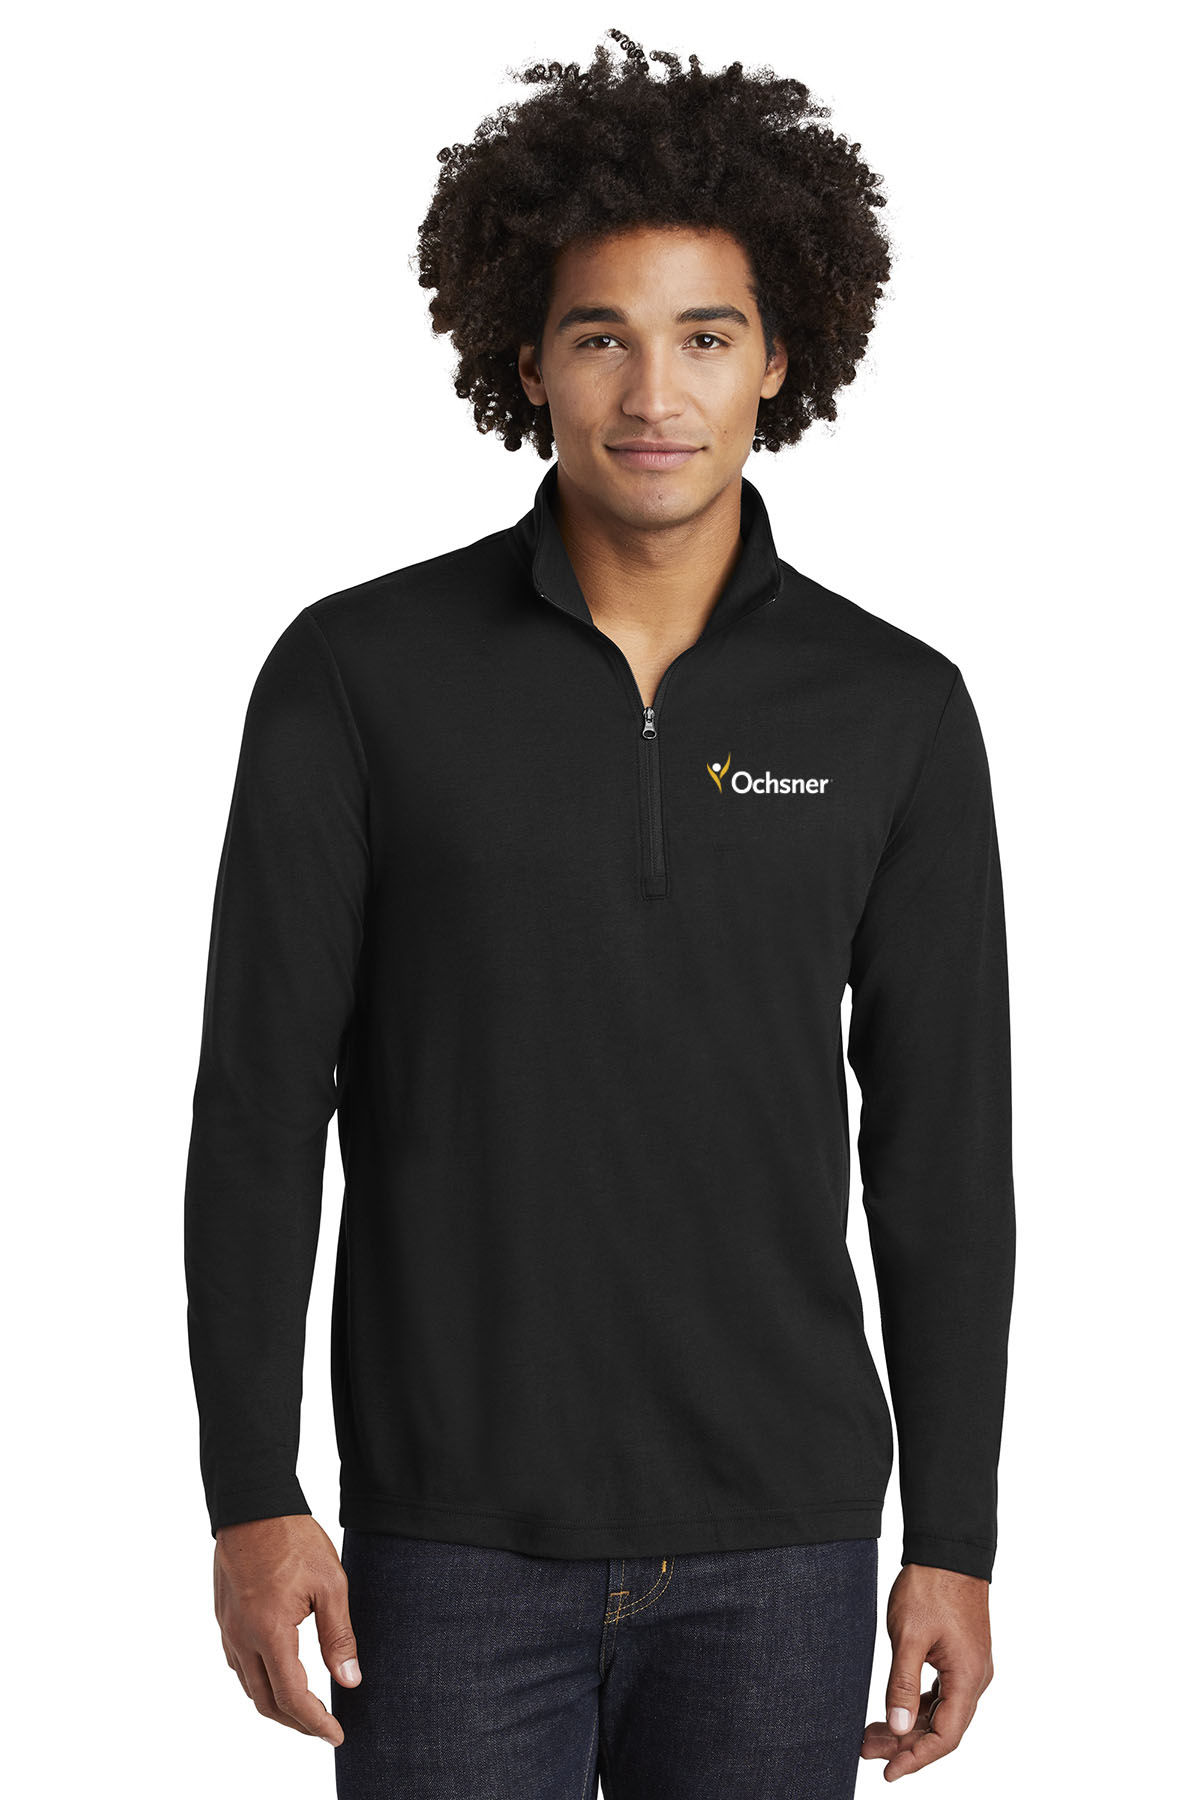 Sport-Tek Men's 1/4 Zip Pullover, Black, large image number 1